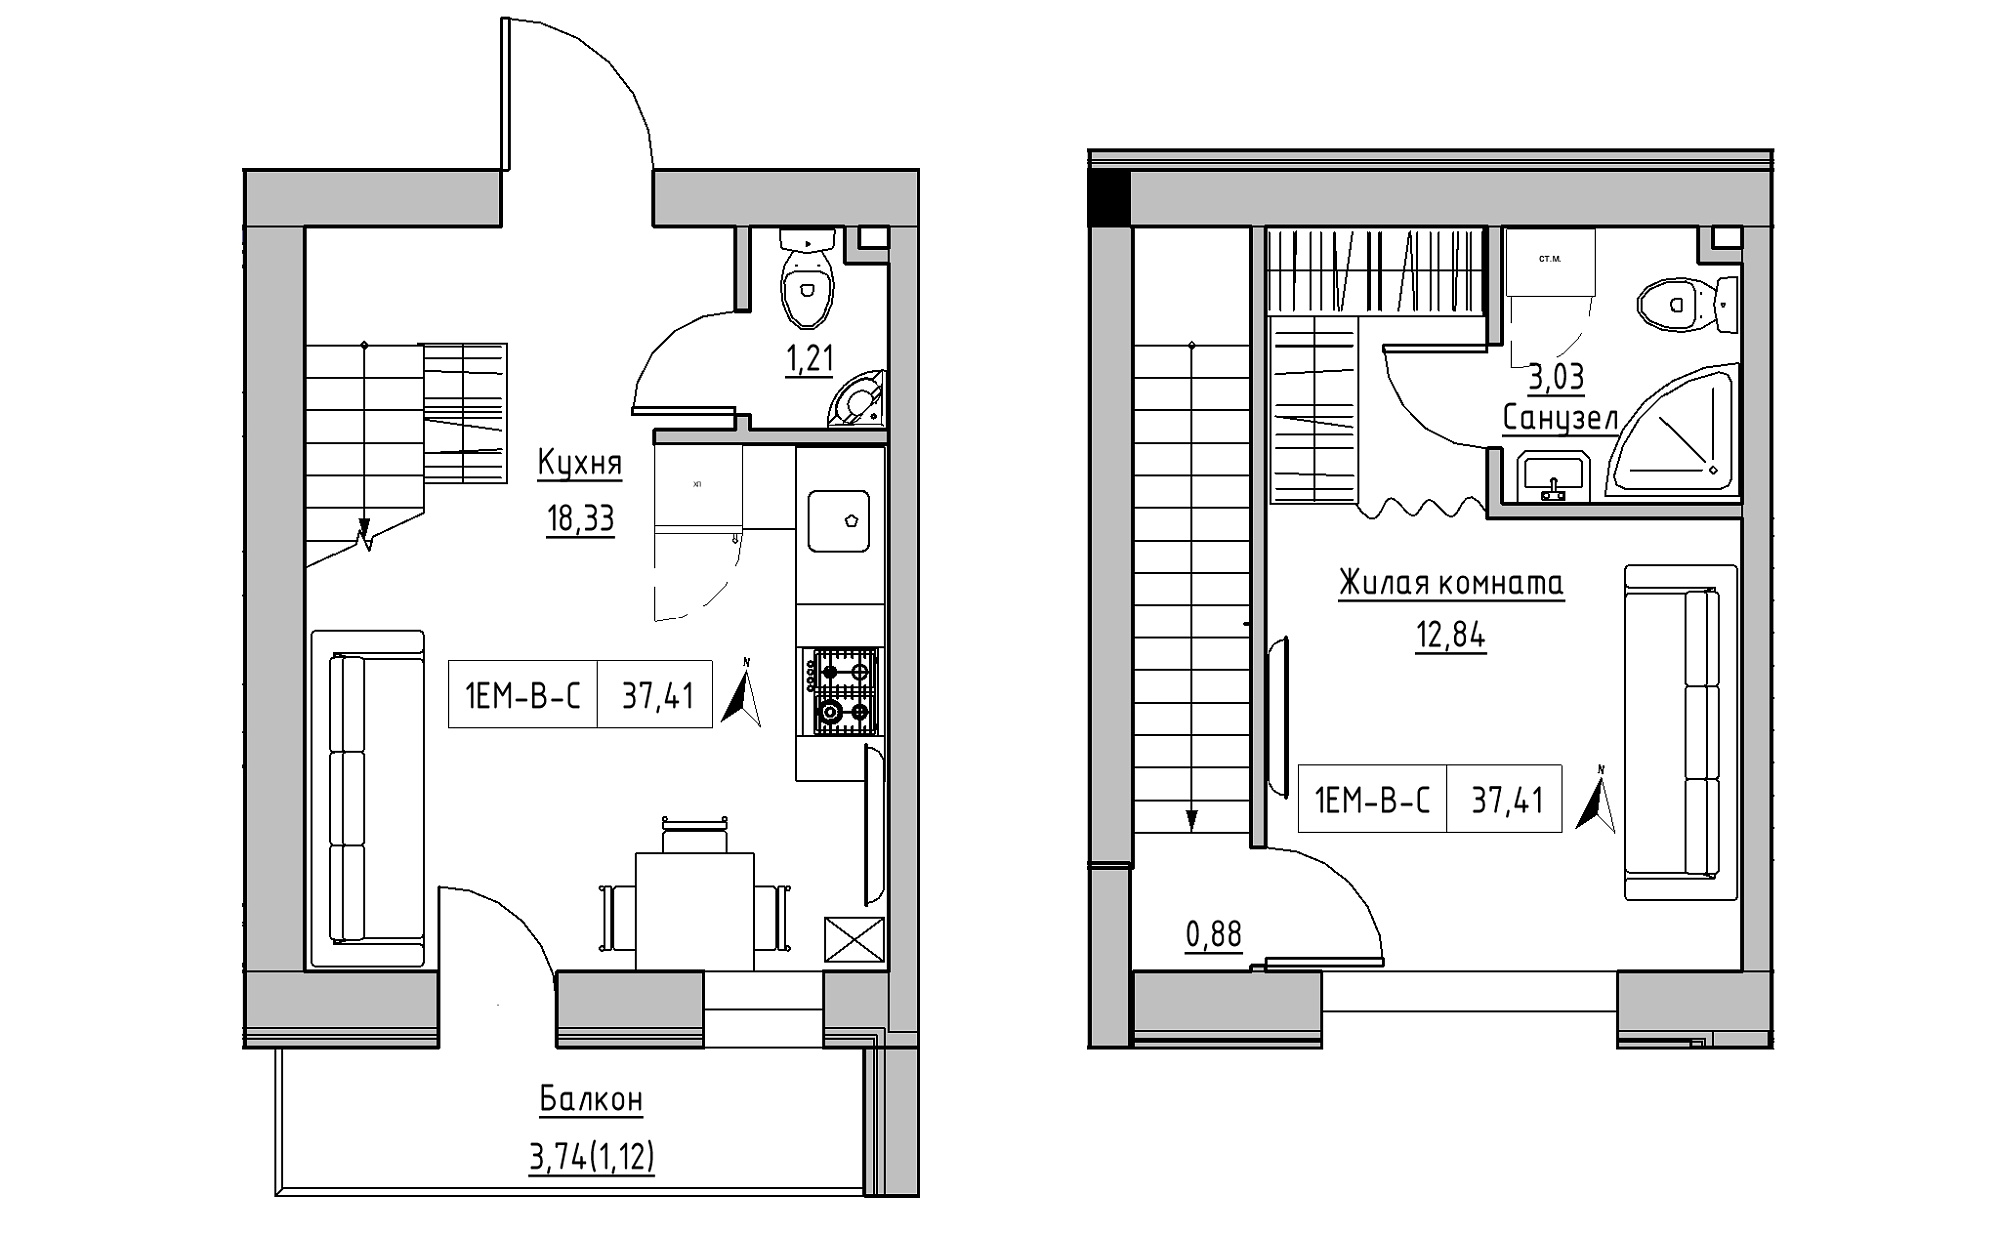 Planning 2-lvl flats area 37.41m2, KS-023-05/0014.